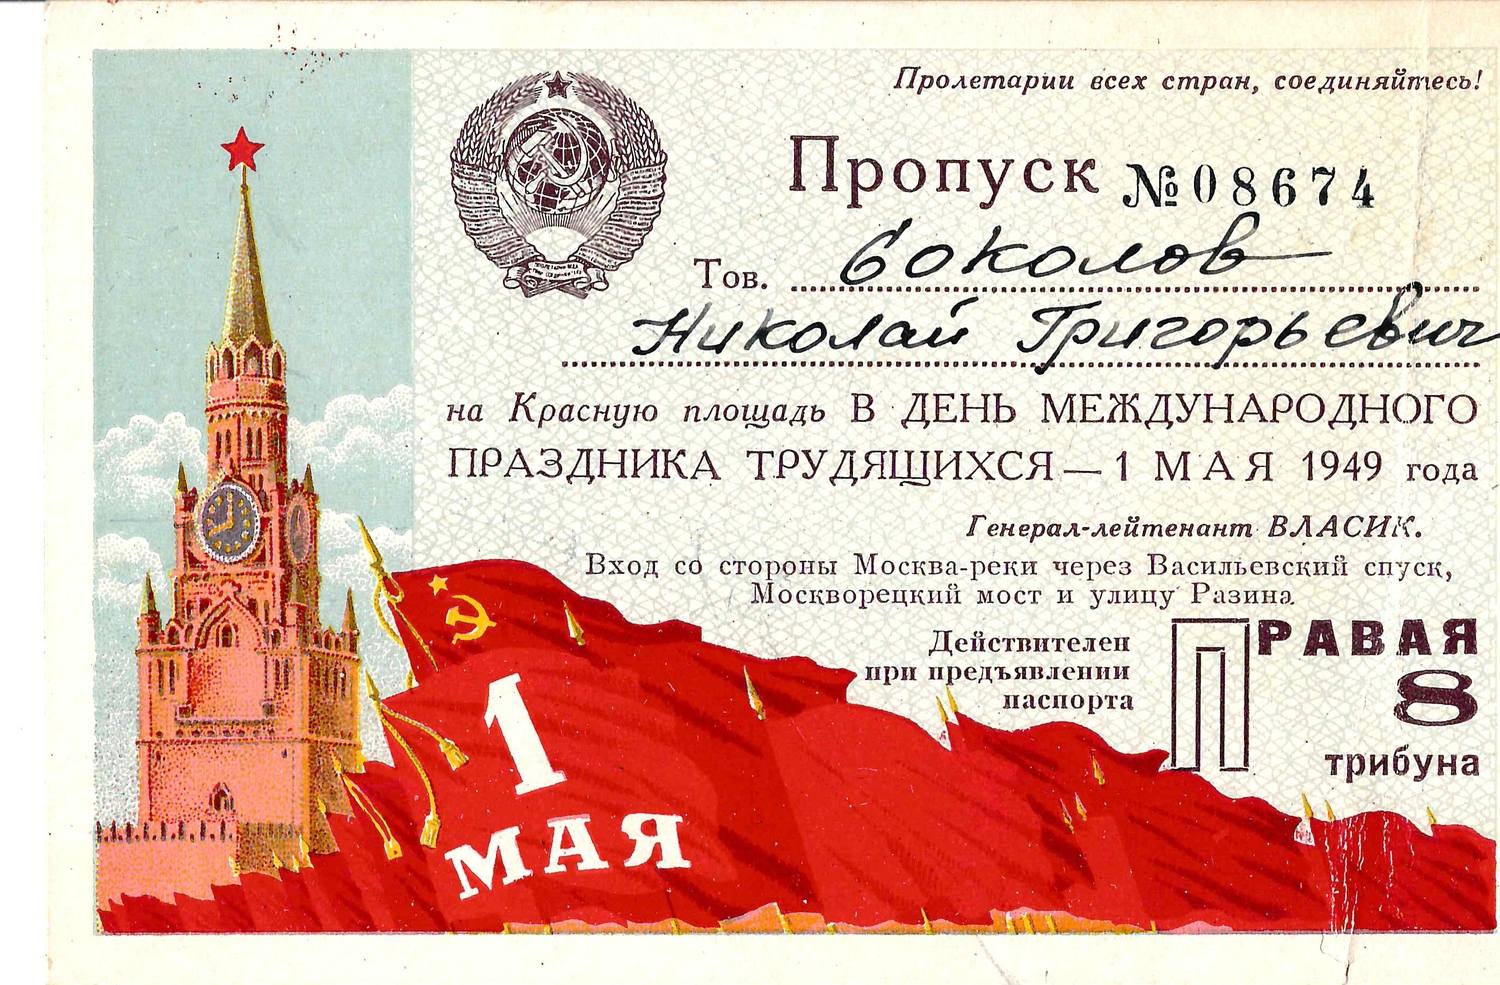 Пропуск на Красную площадь в день Международного праздника трудящихся 1 мая 1949 года на имя Николая Григорьевича Соколова.